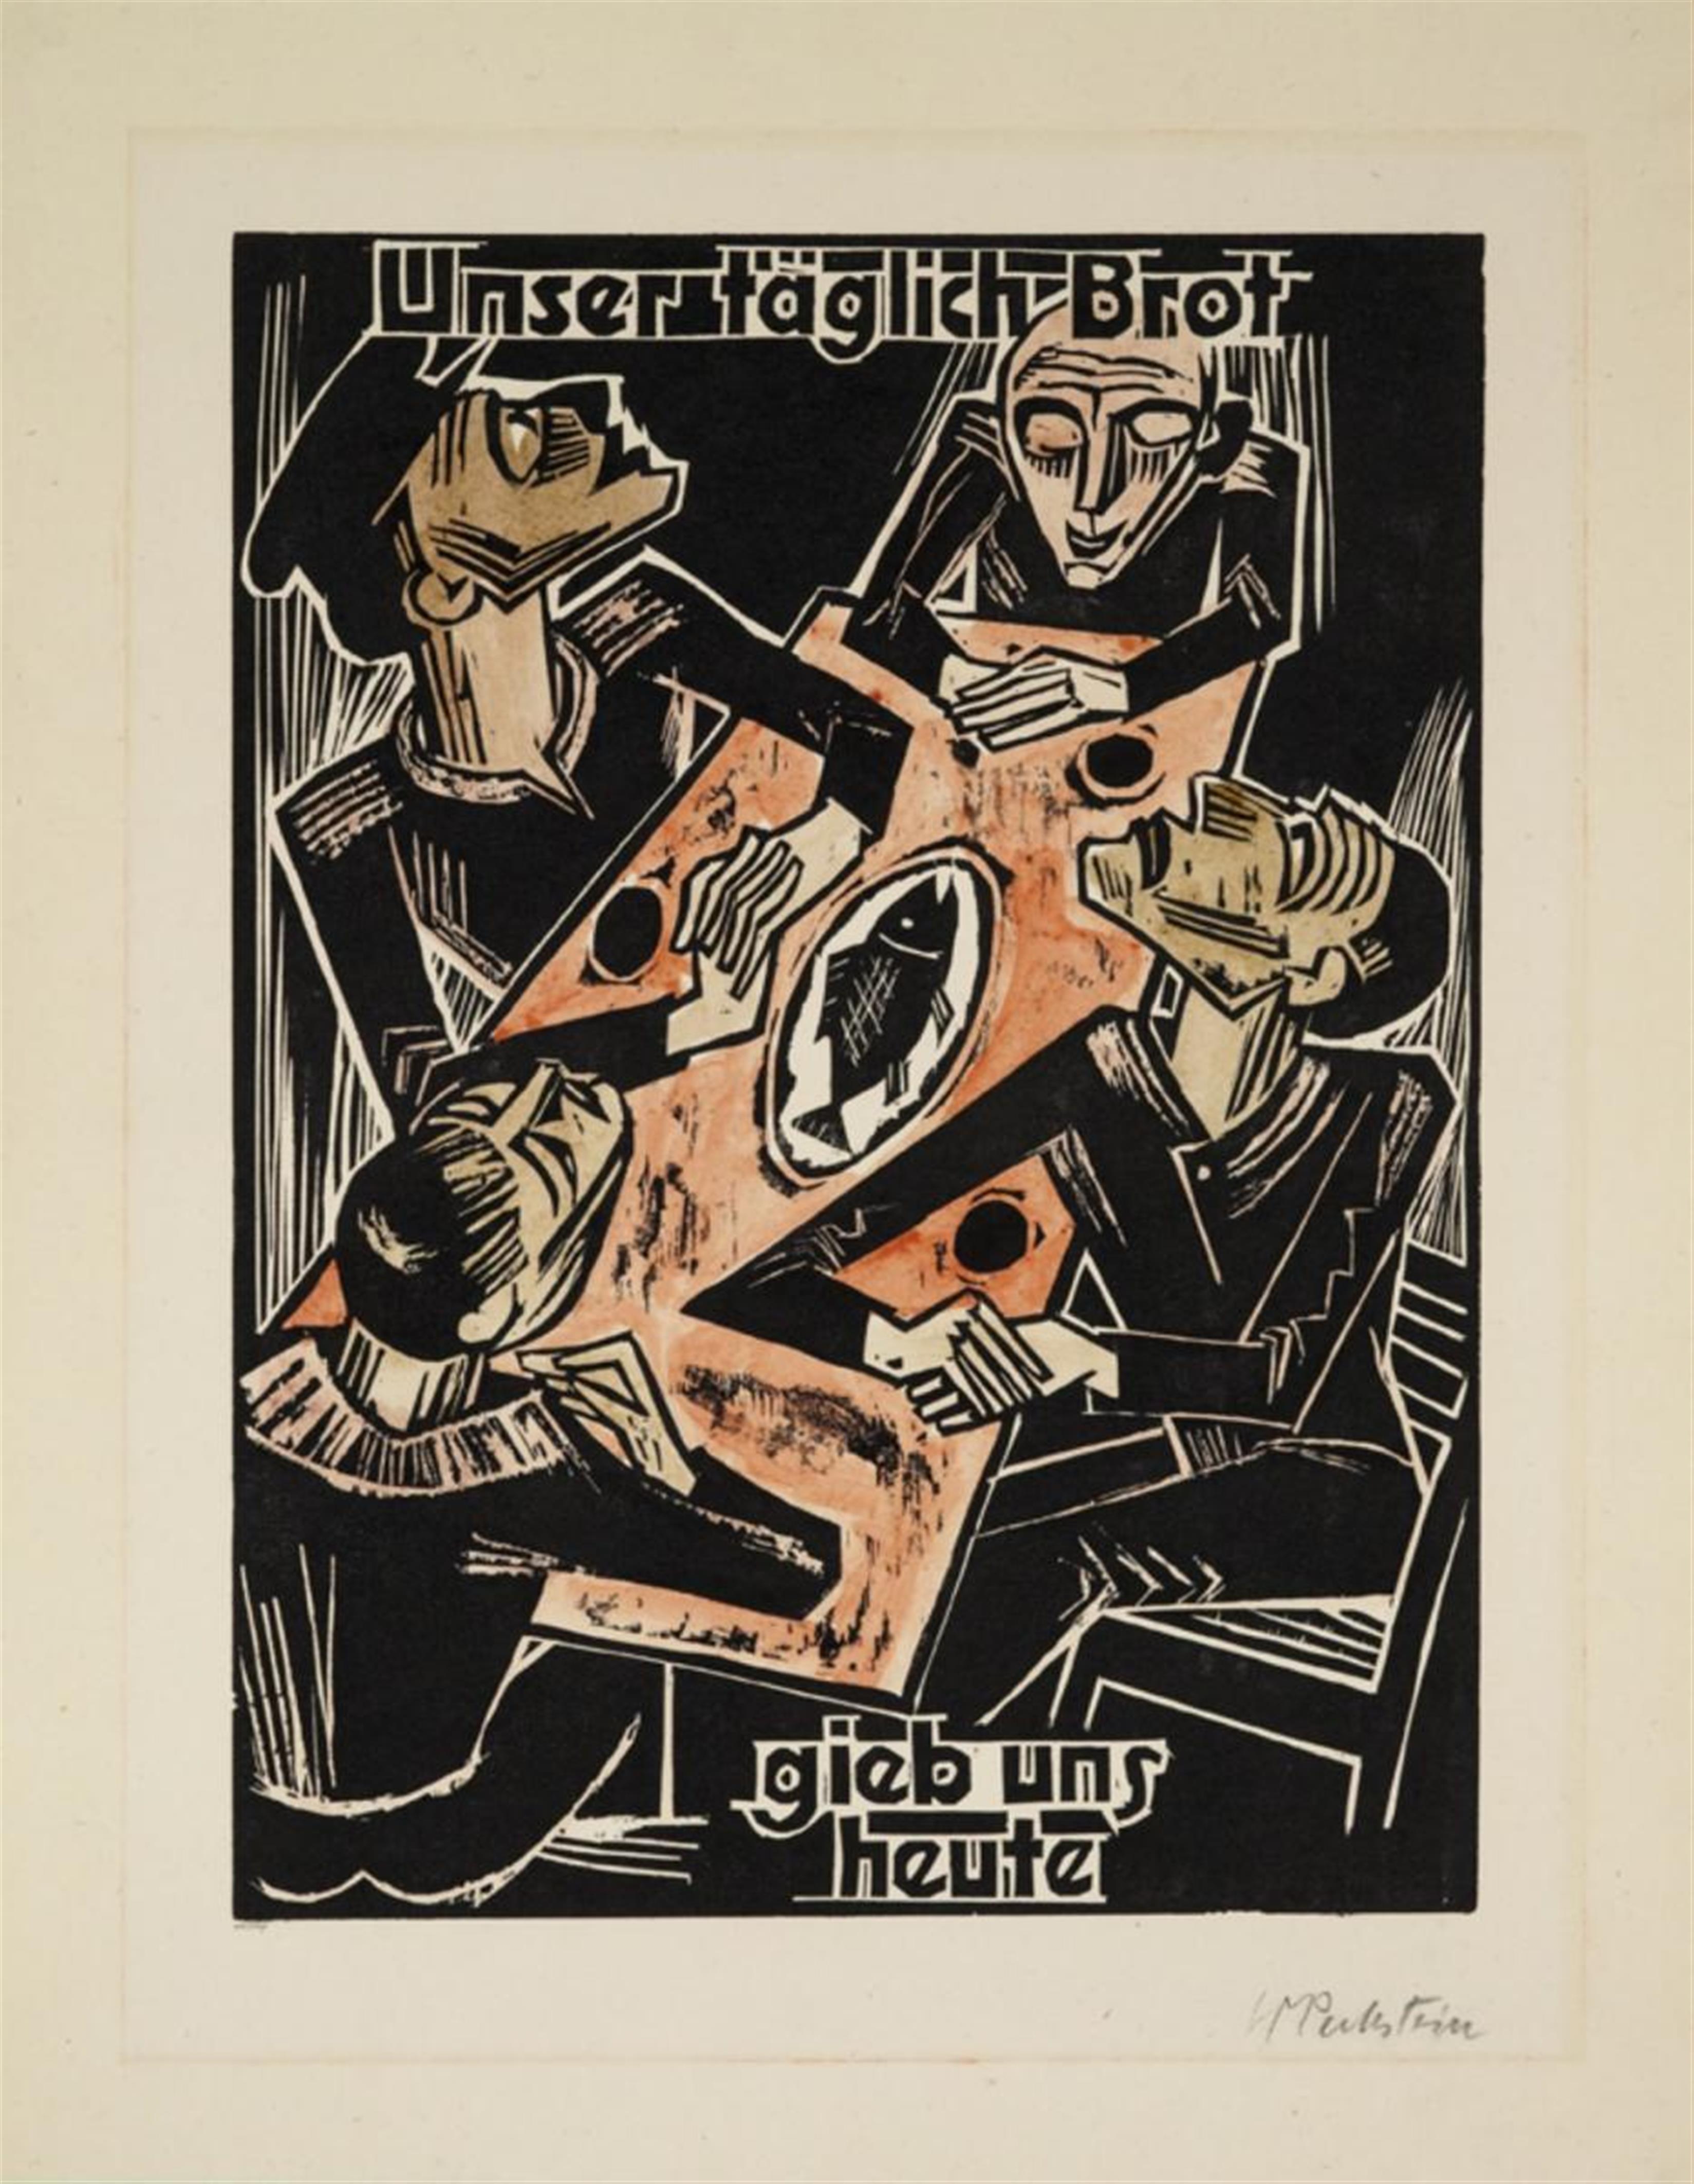 Hermann Max Pechstein - Unser tägliches Brot gieb uns heute - image-1